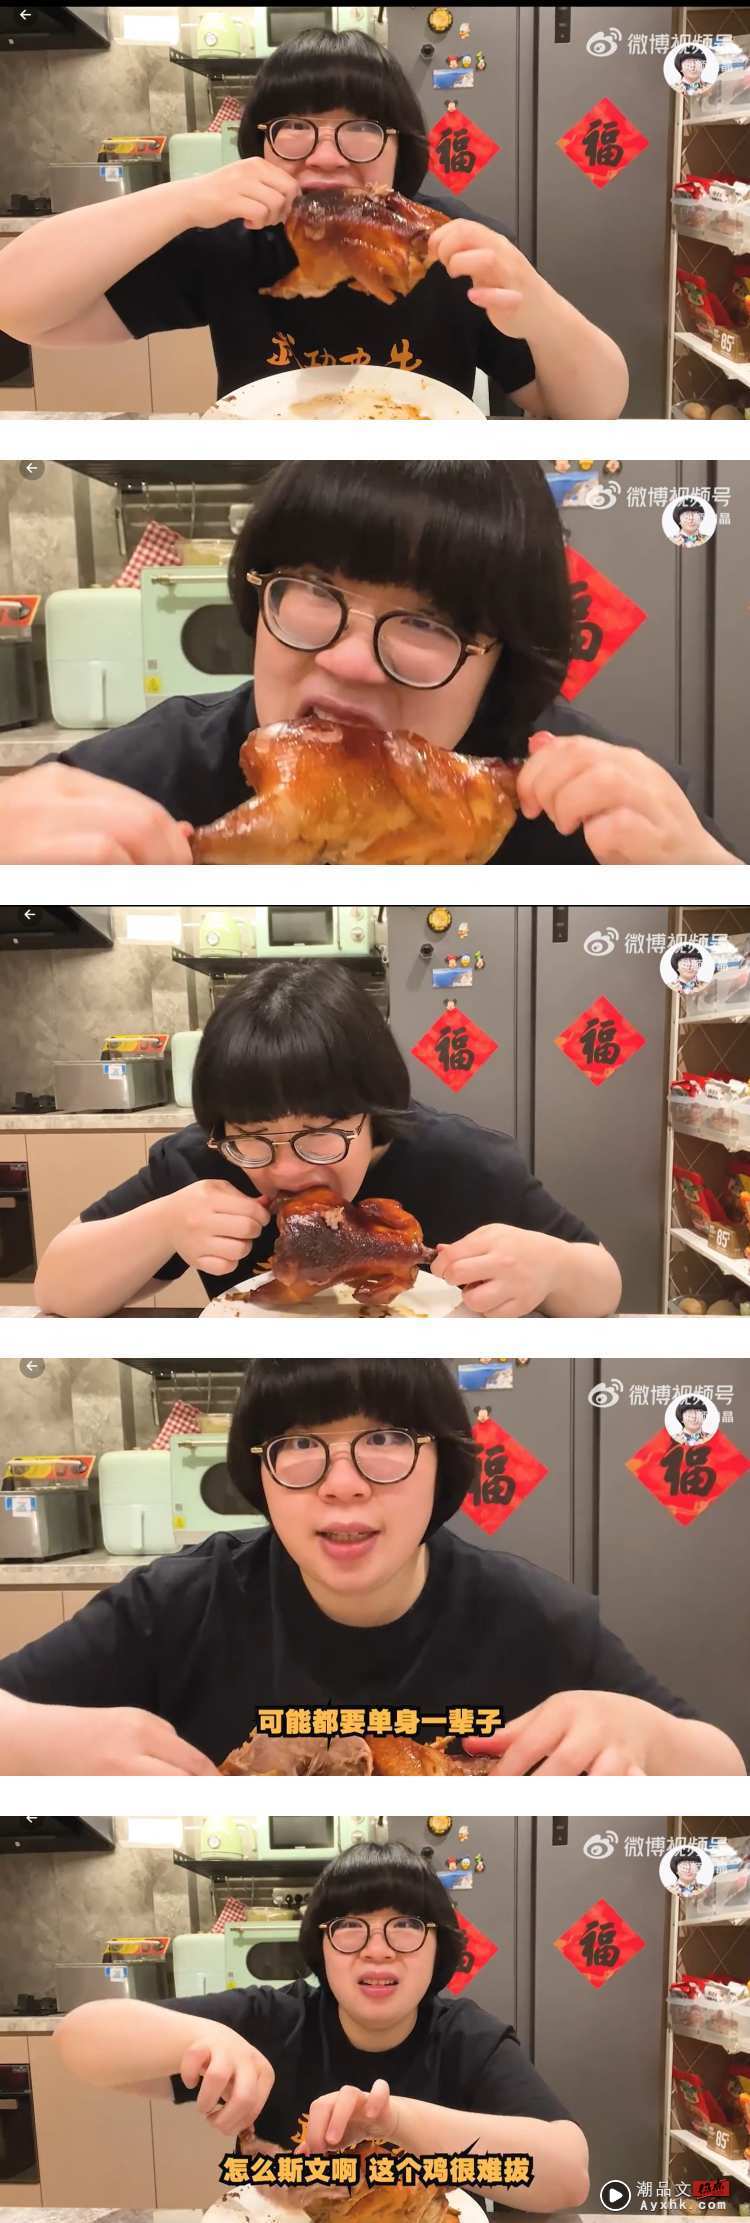 颜如晶被困在上海！ 上手捉整只鸡来吃...自嘲吃相：要单身一辈子了 娱乐资讯 图1张